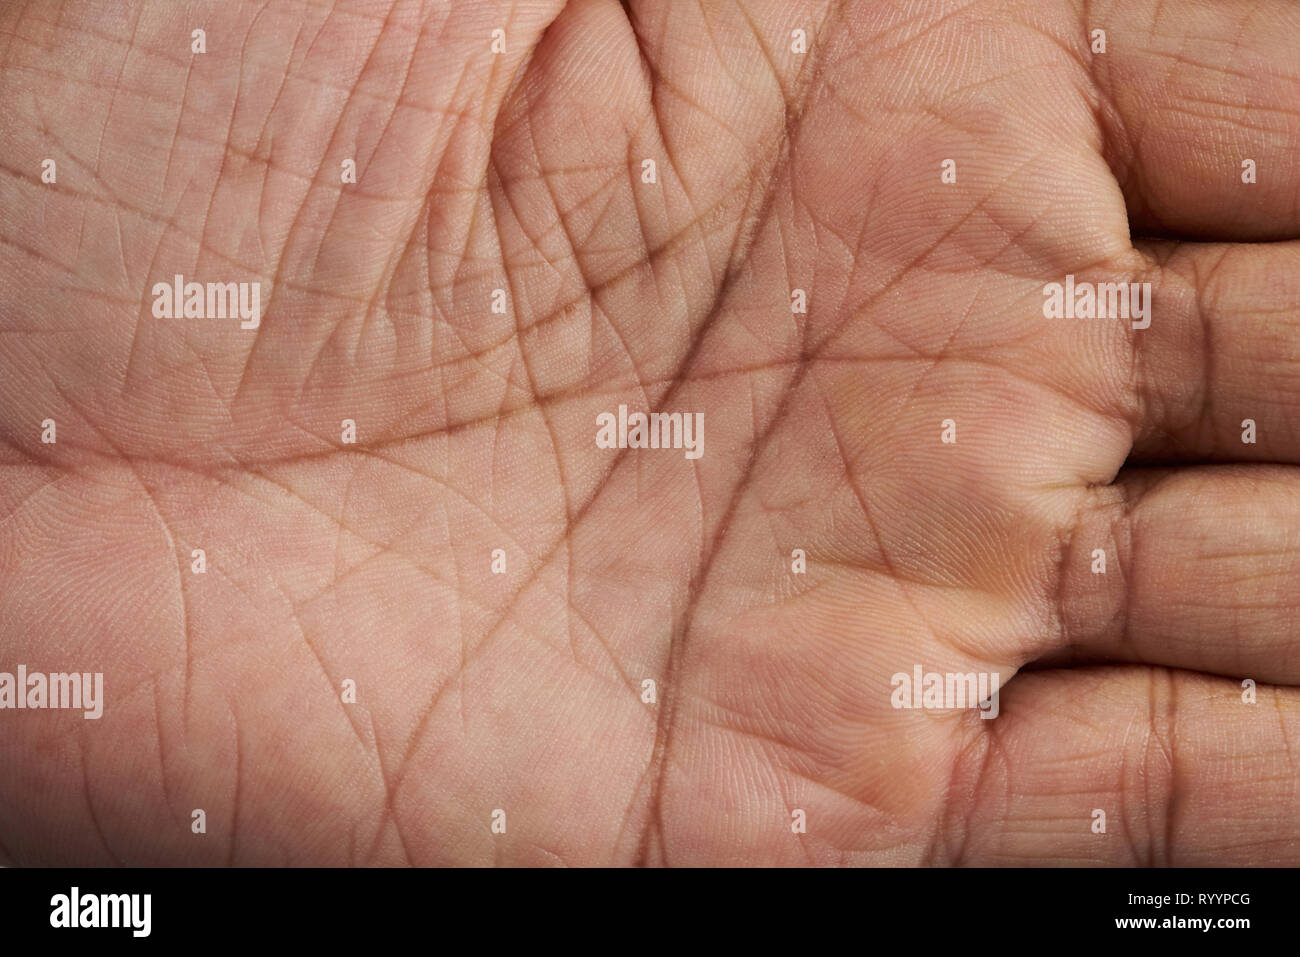 Linien auf der menschlichen Hand palm Nähe zu sehen. Stockfoto